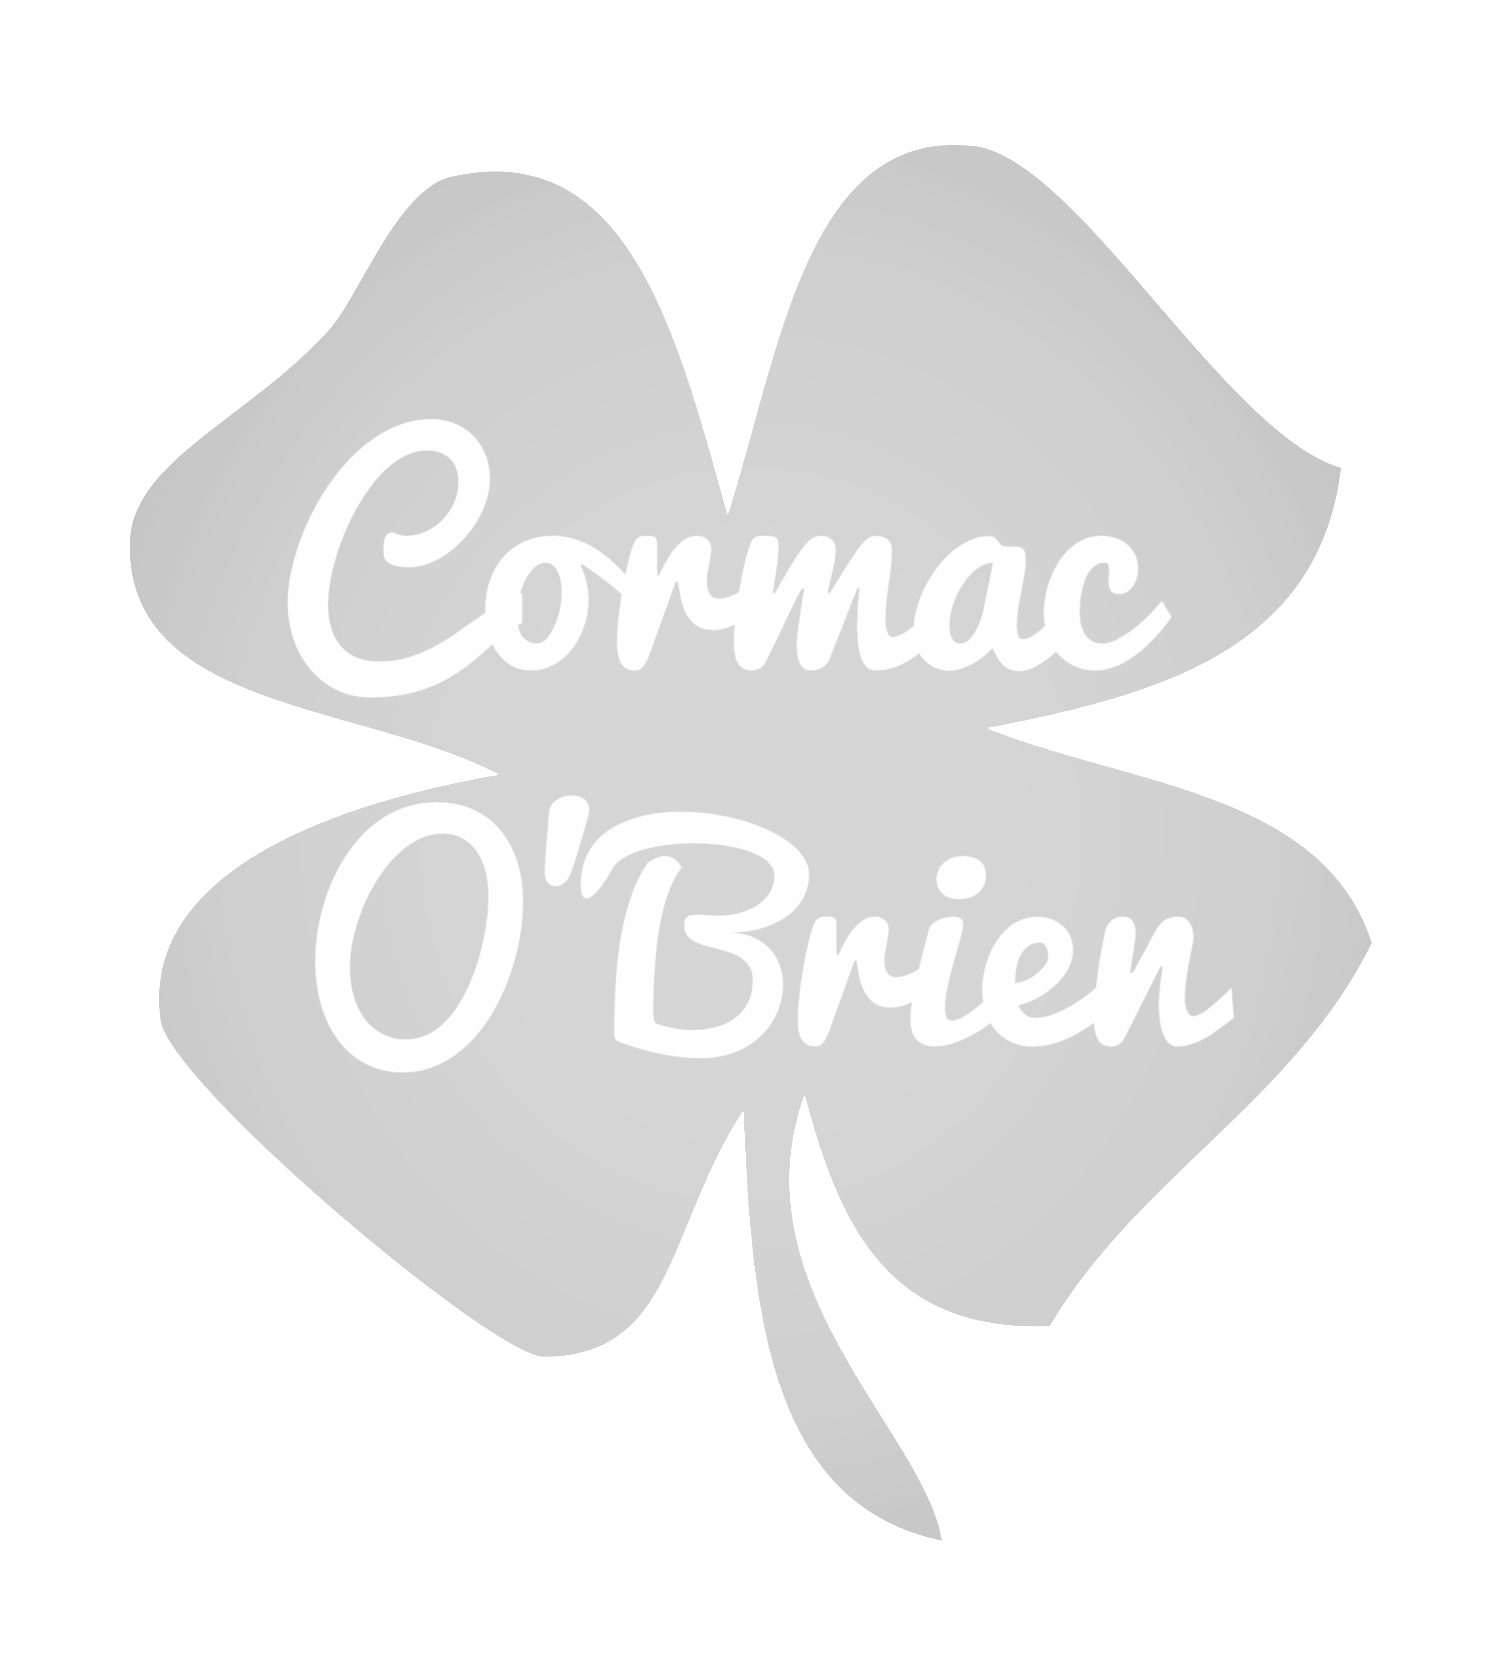 Cormac O'Brien